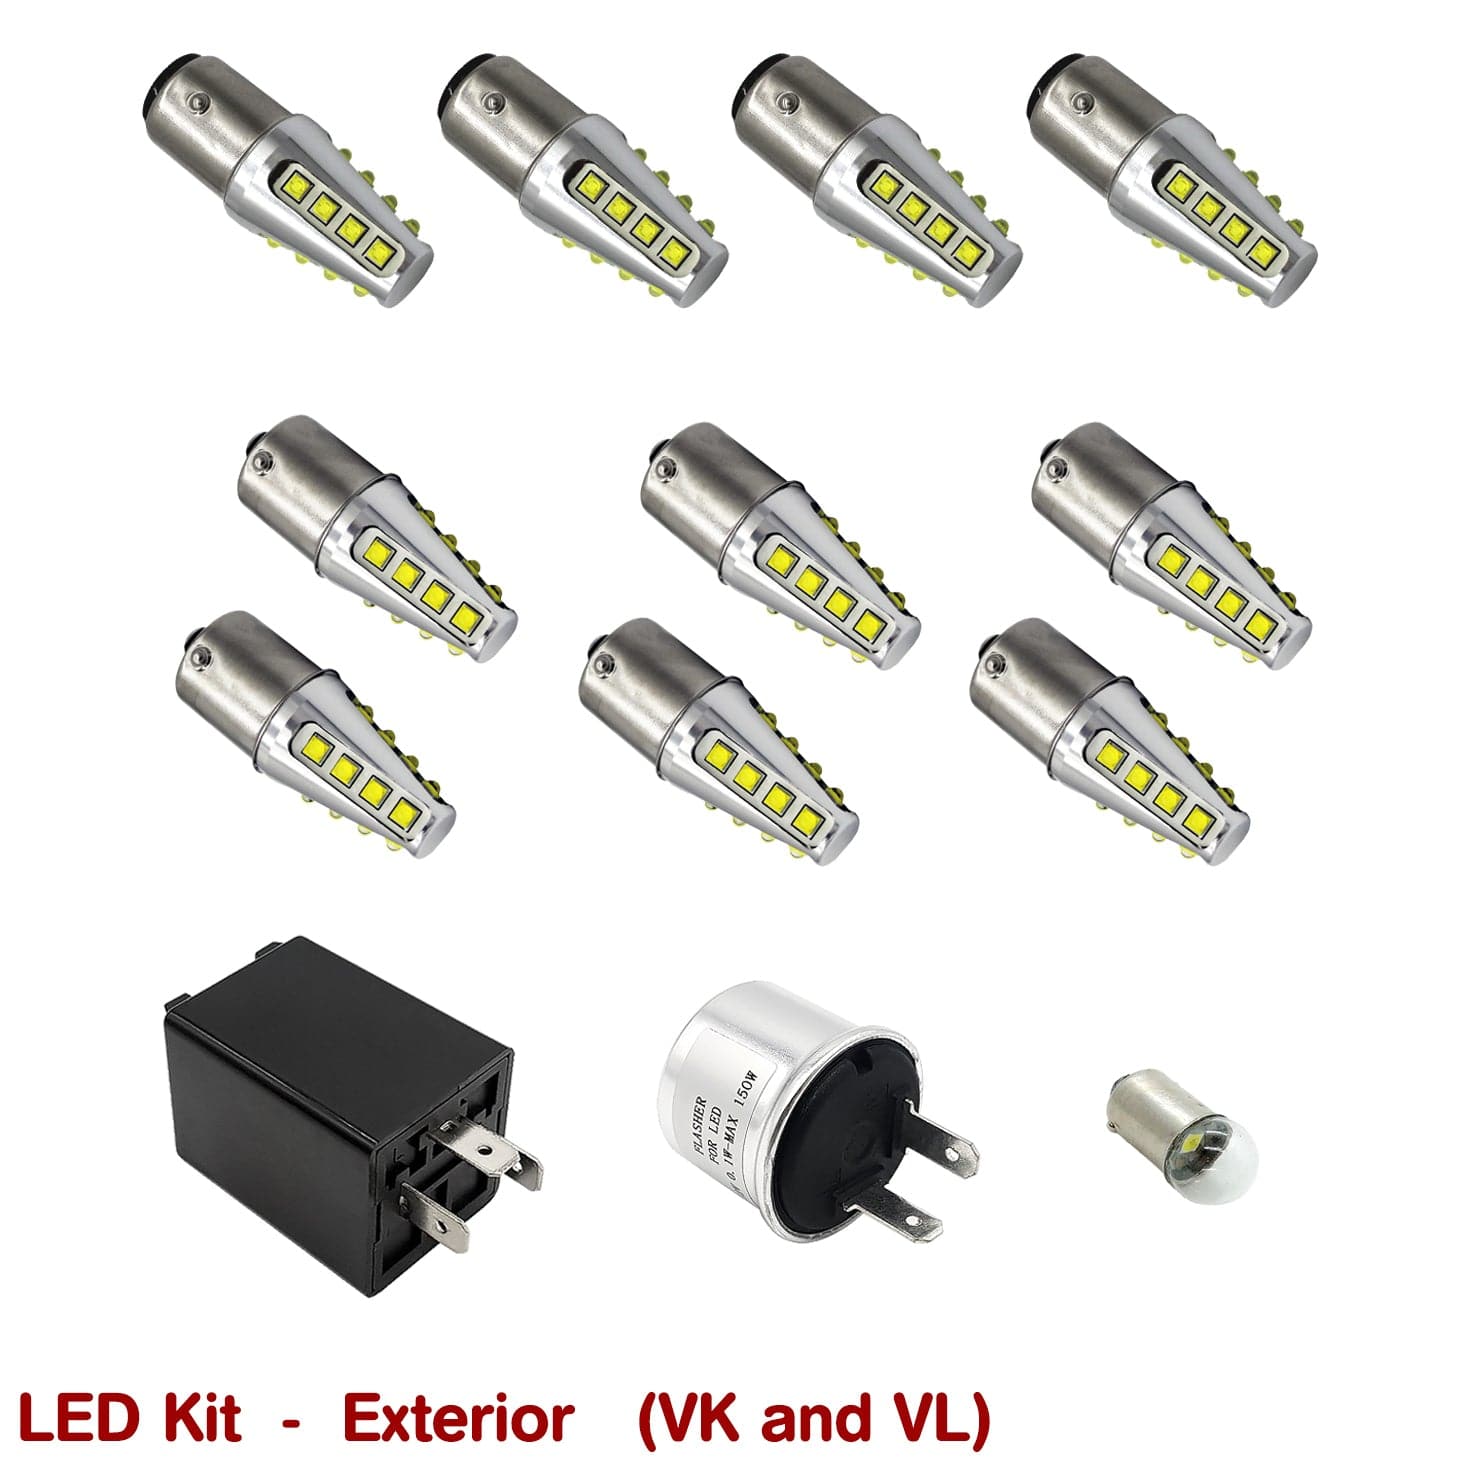 EXTERIOR LED KIT for VK-VL